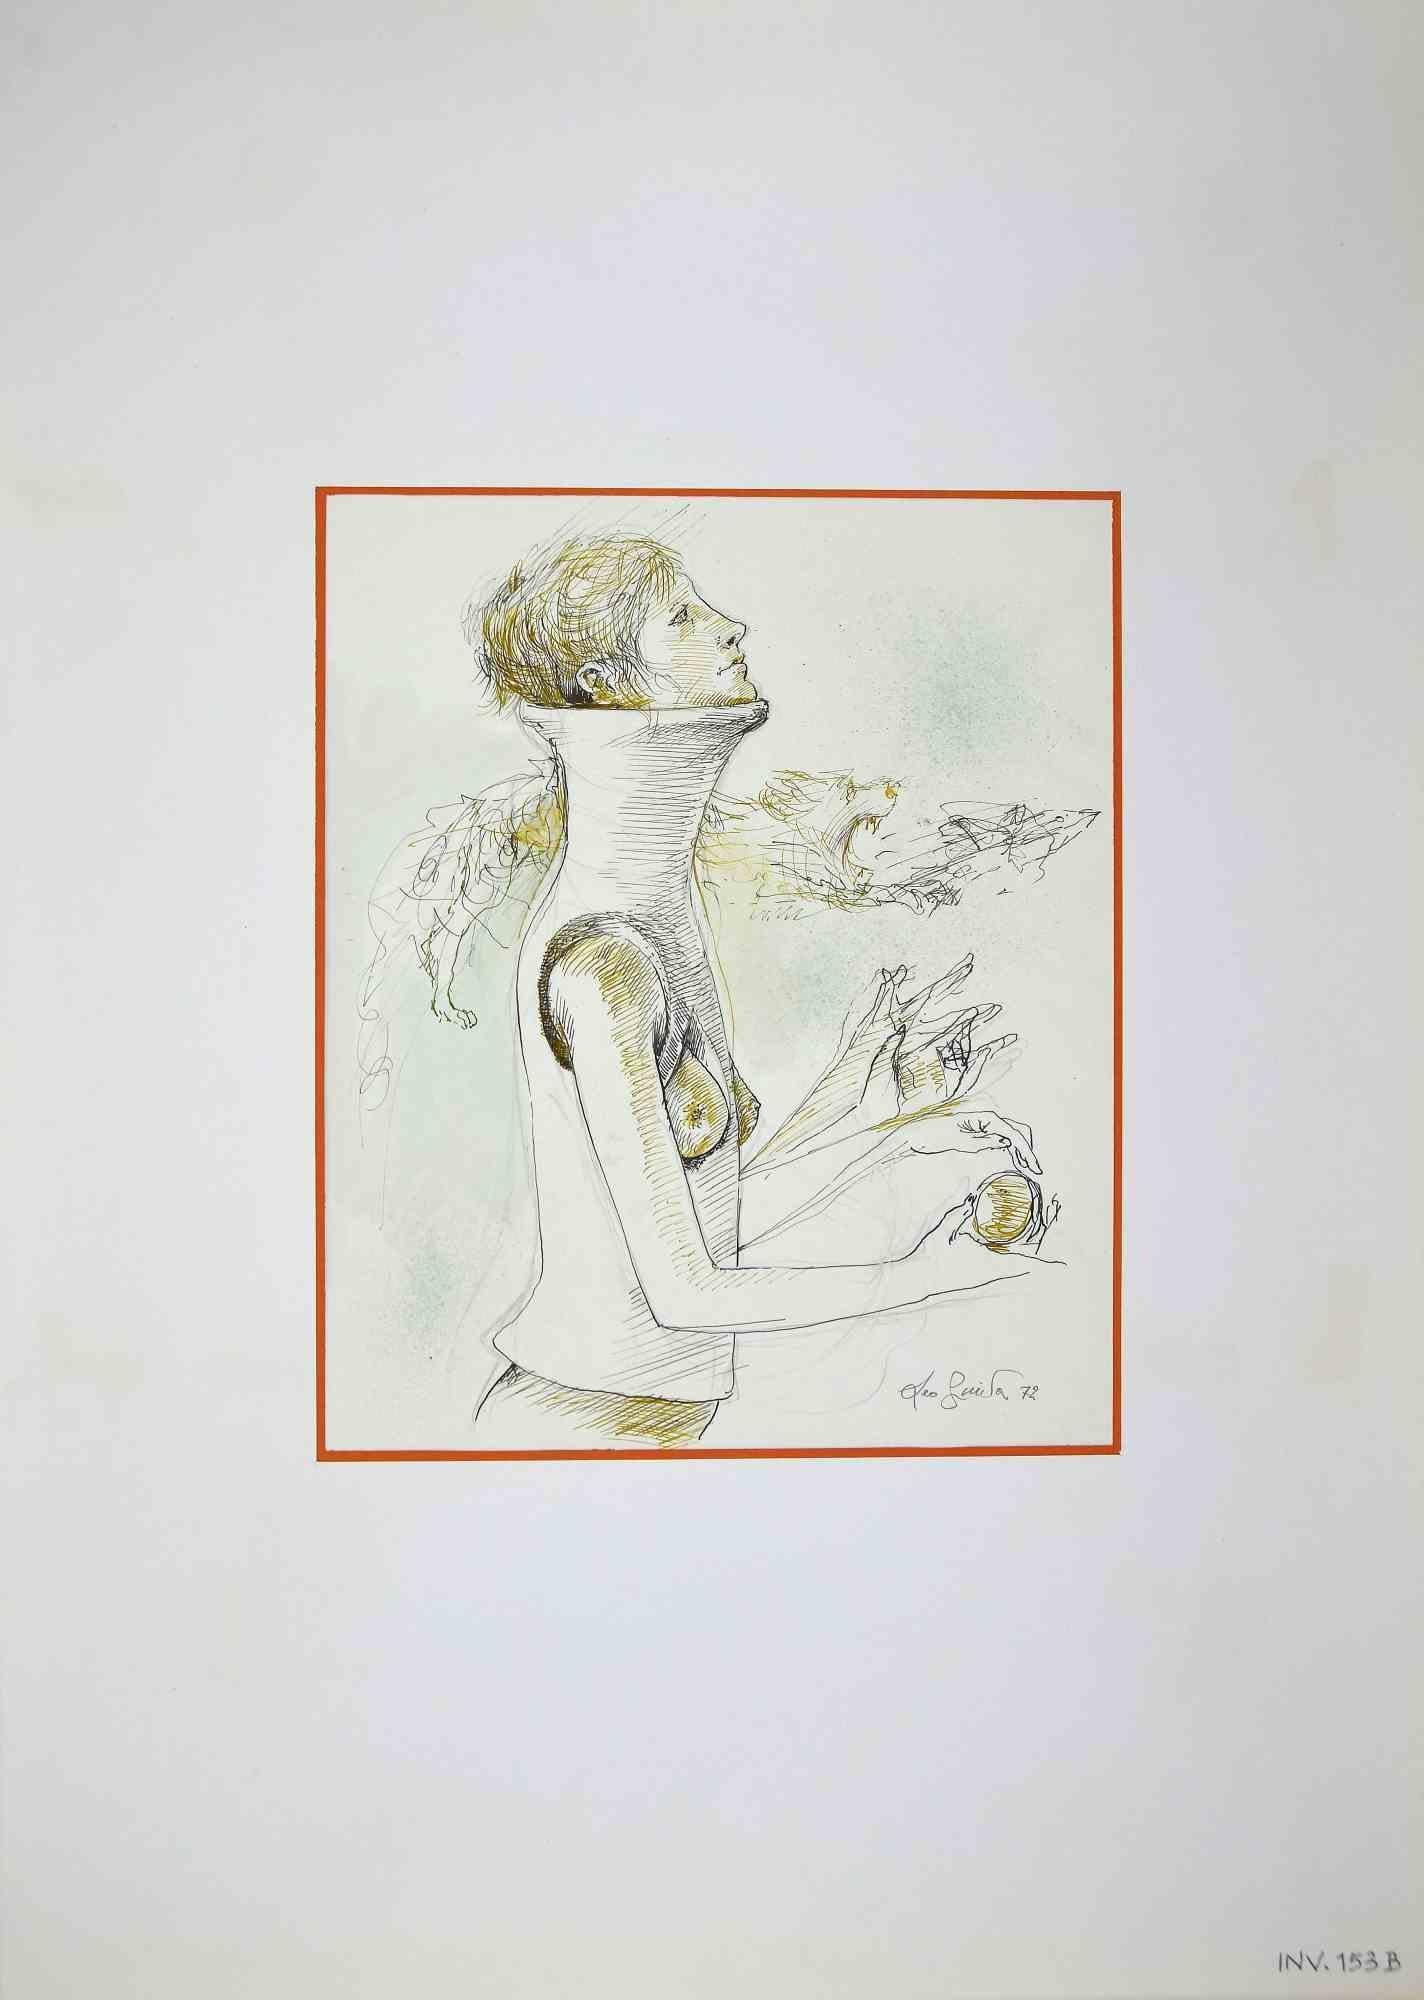 Strange Abilities ist eine Originalzeichnung in Porzellantinte von Leo Guida aus dem Jahr 1972.

Guter Zustand.

Handsigniert.

Leo Guida  (1992 - 2017). Mit seinem Gespür für aktuelle Themen, künstlerische Strömungen und historische Techniken ist